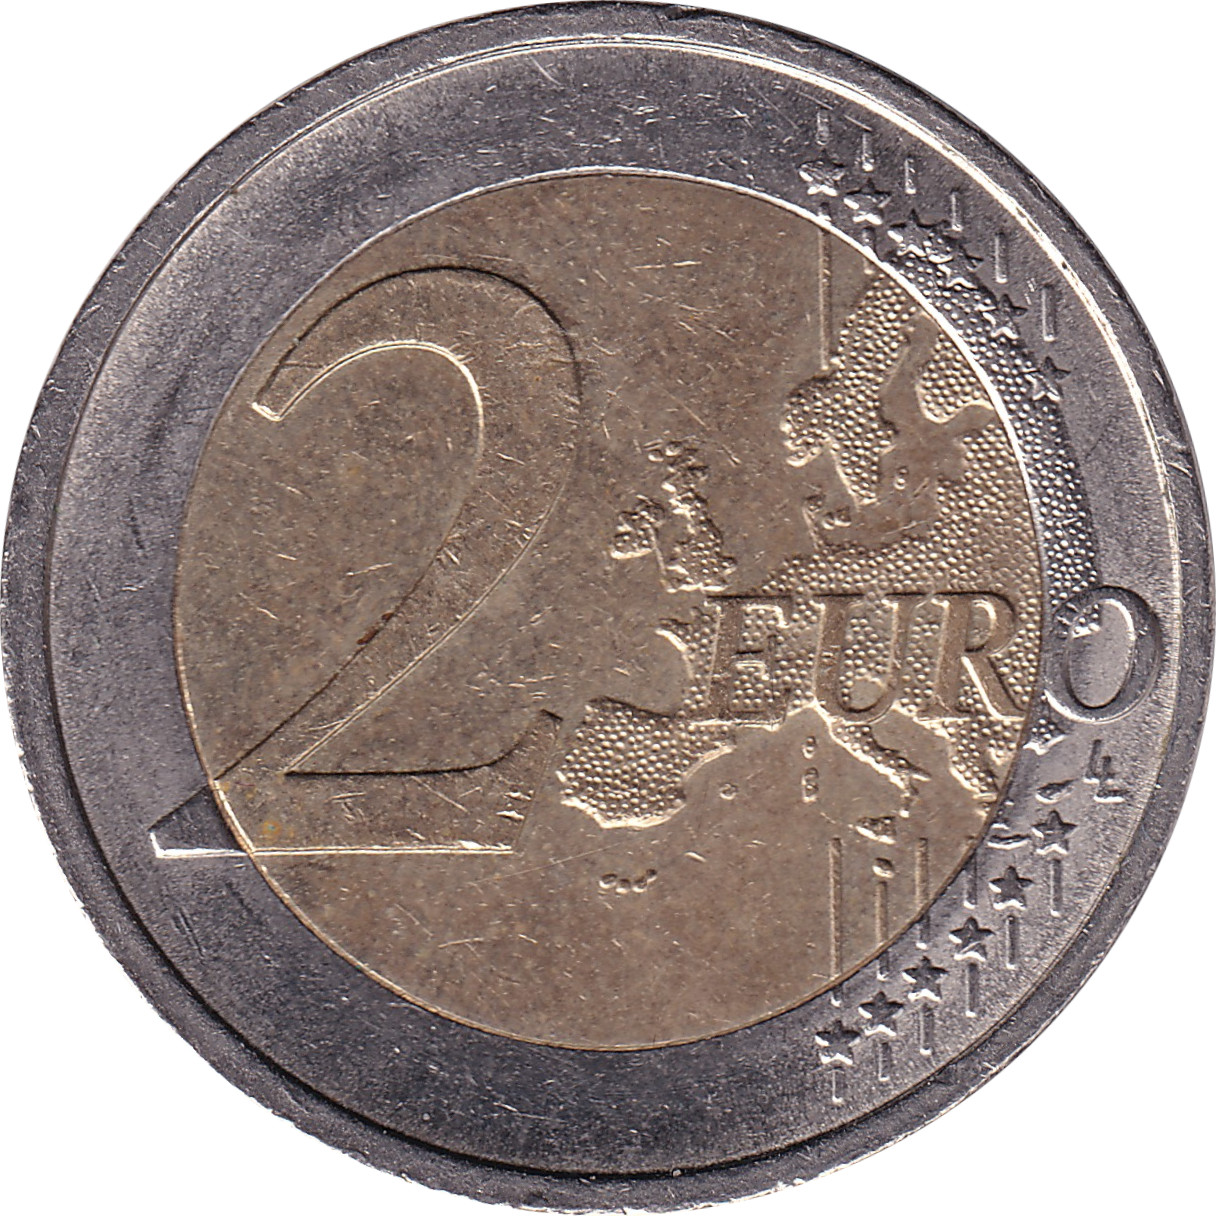 2 euro - Saxony